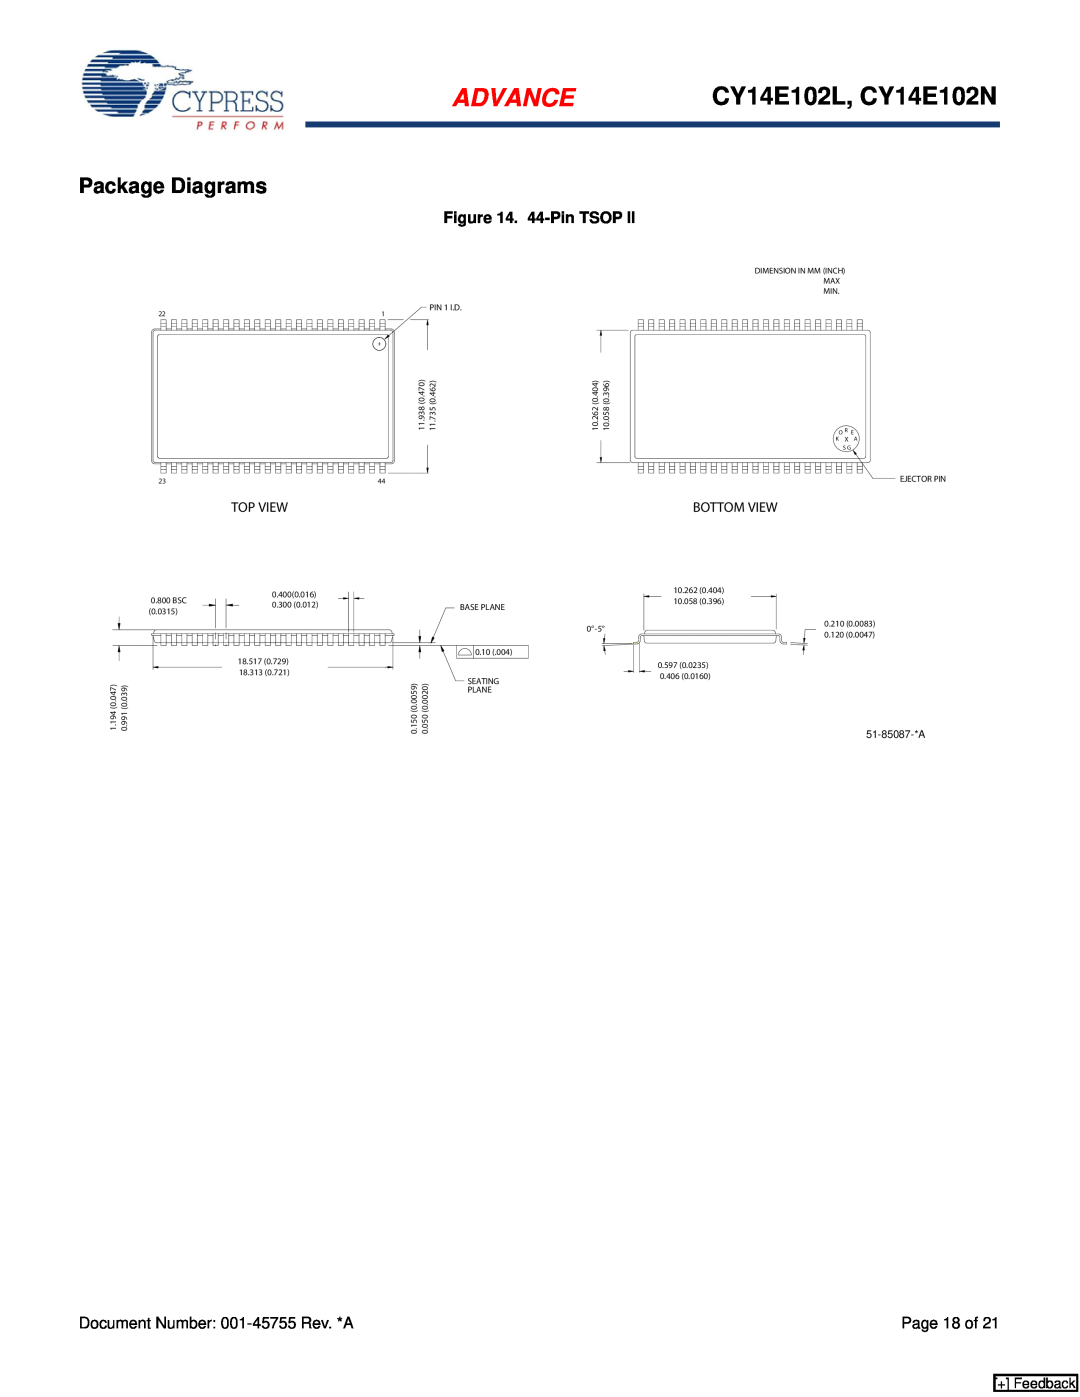 Cypress manual Package Diagrams, 44-Pin TSOP, Advance, CY14E102L, CY14E102N, + Feedback 